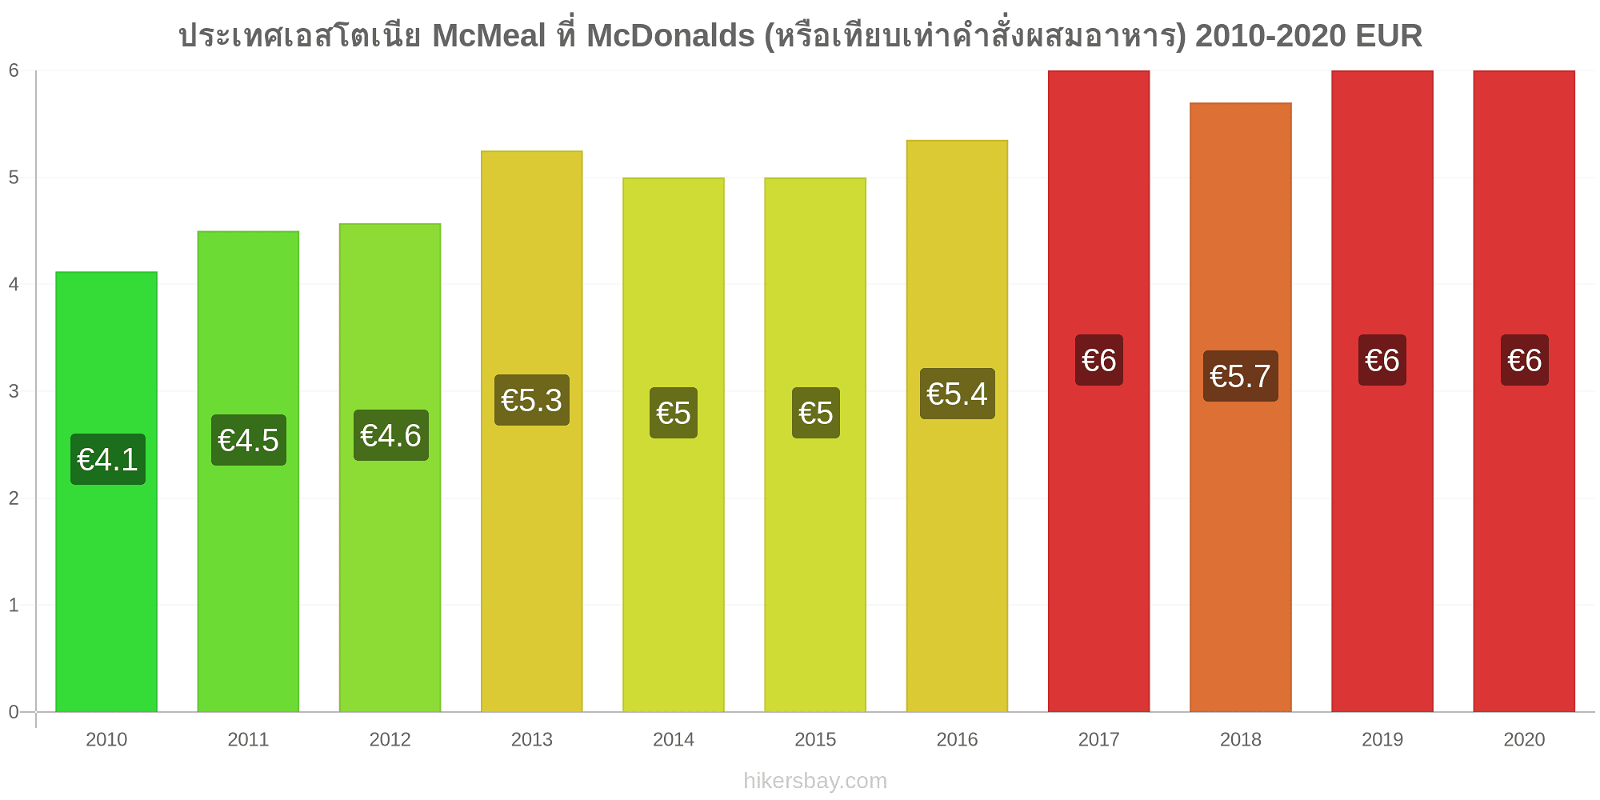 ประเทศเอสโตเนีย การเปลี่ยนแปลงราคา McMeal ที่ McDonalds (หรือเทียบเท่าคำสั่งผสมอาหาร) hikersbay.com